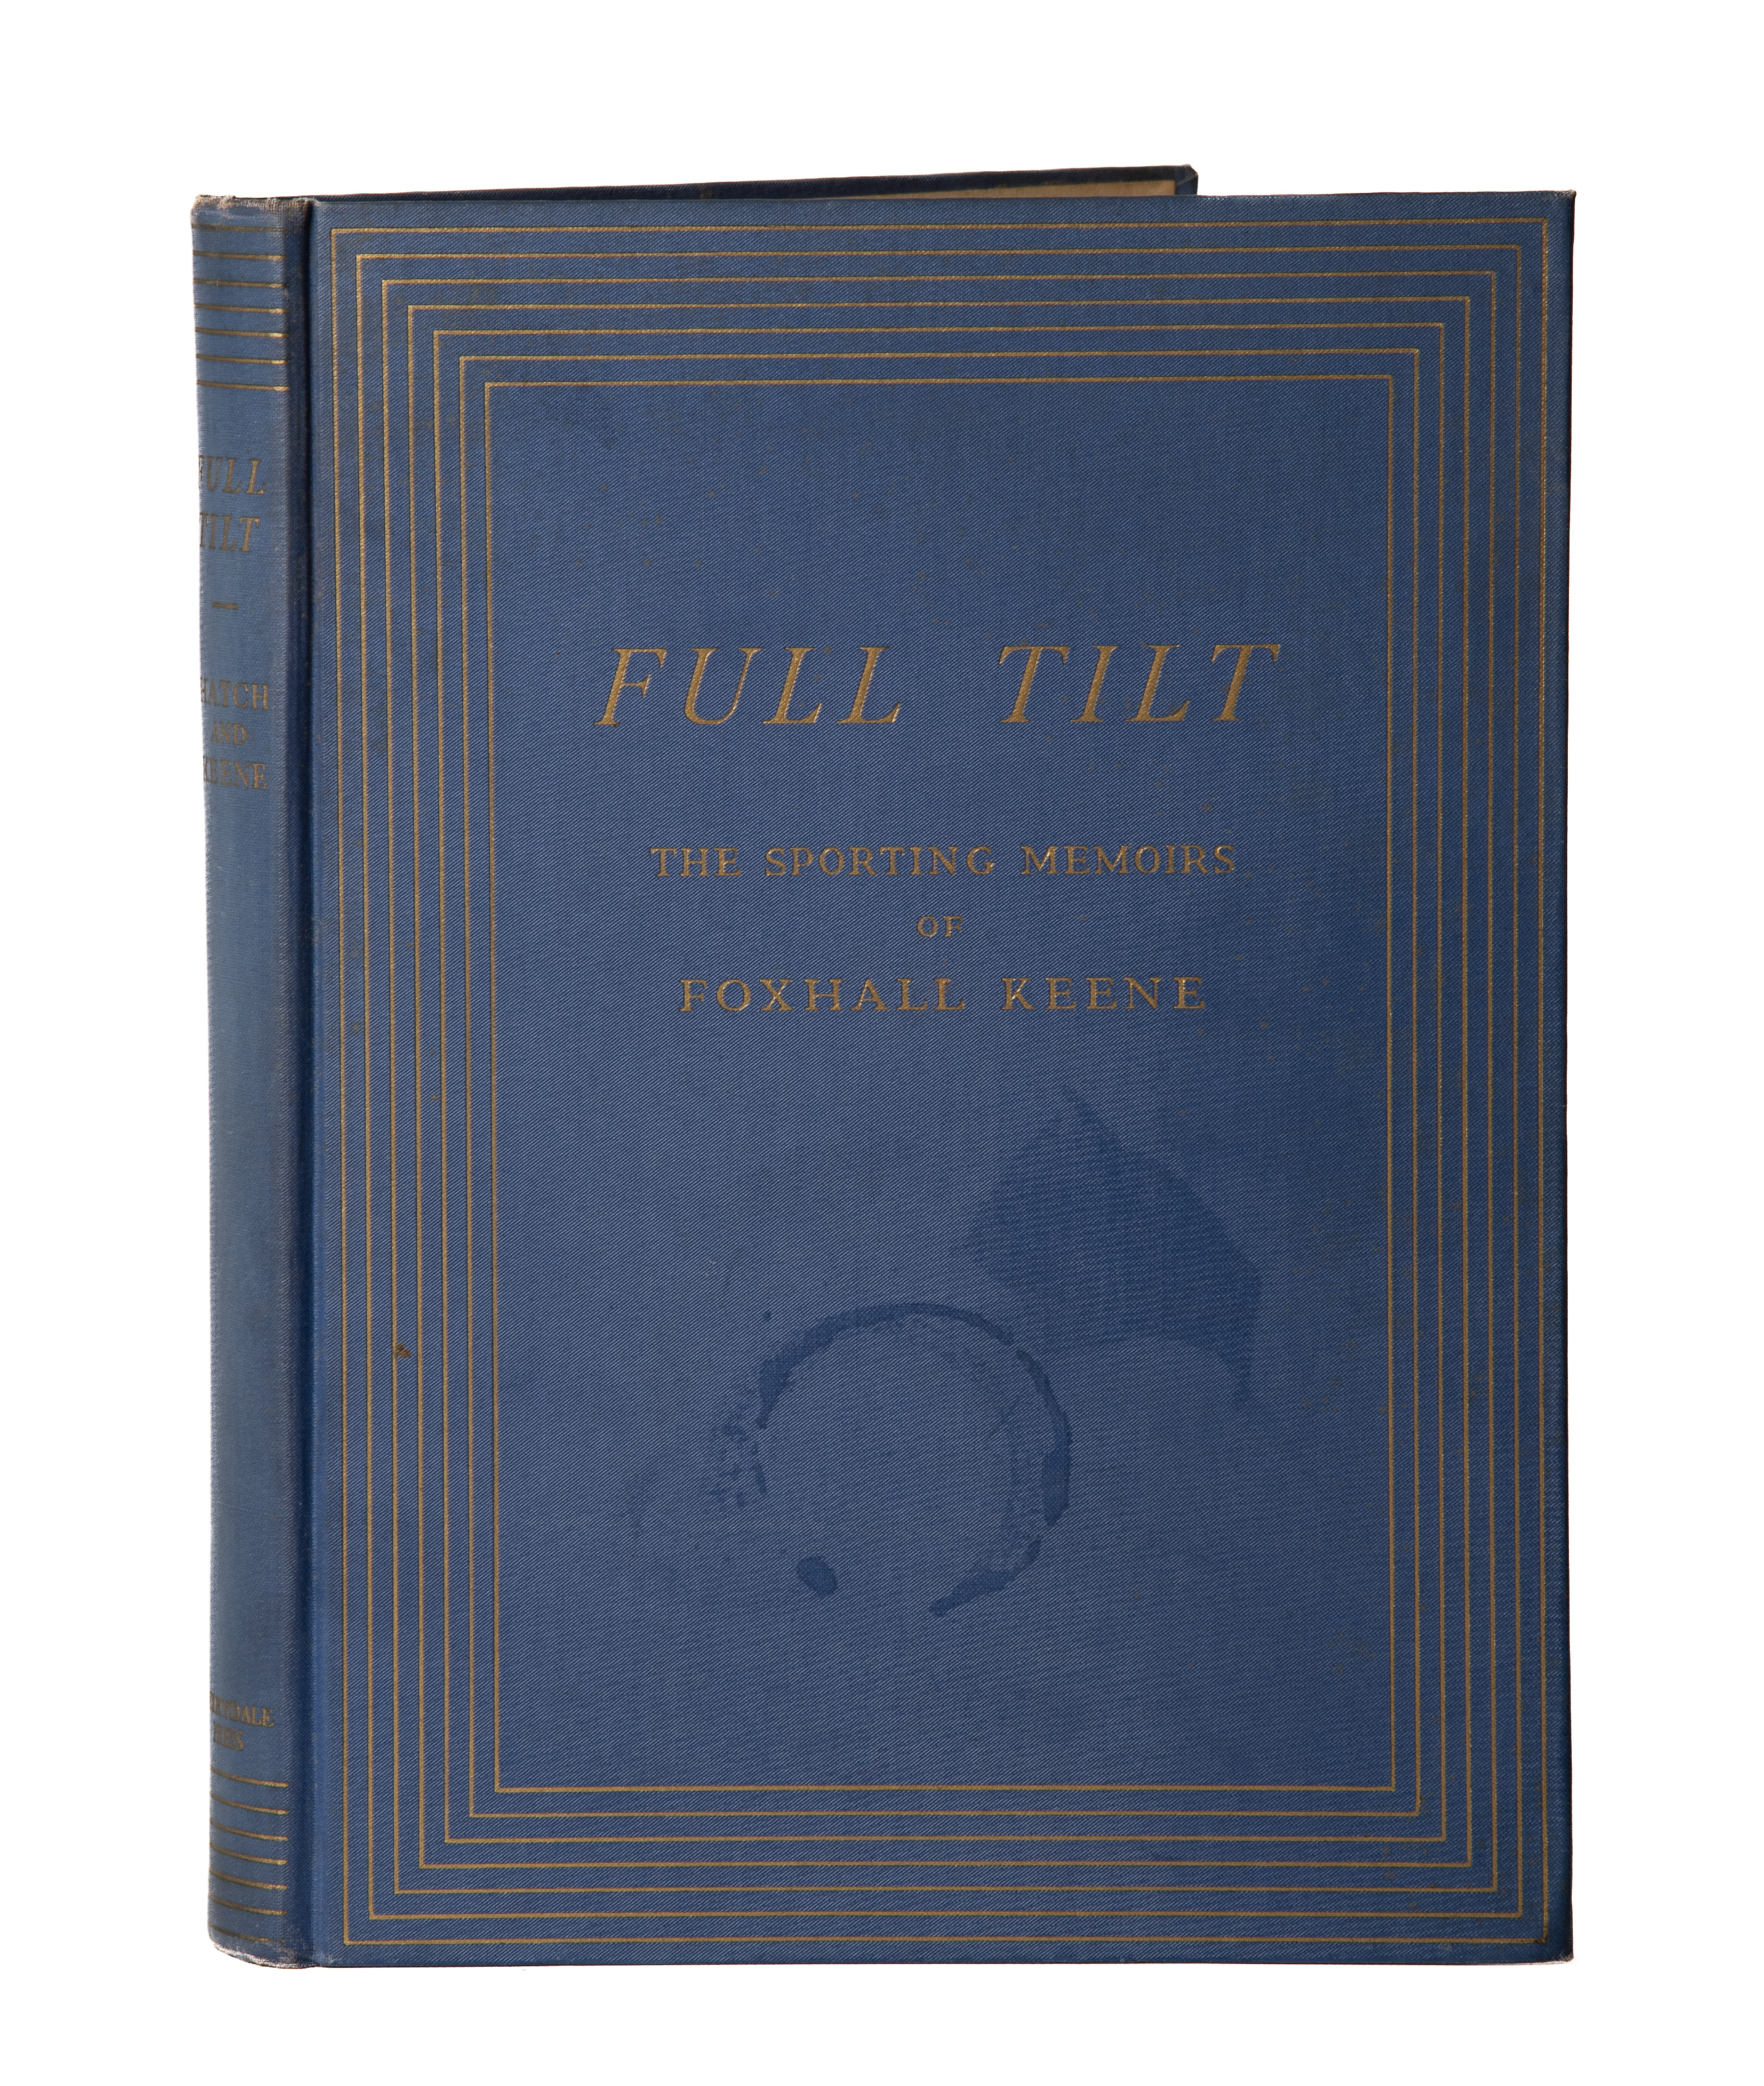 A copy of Full Tilt the Sporting